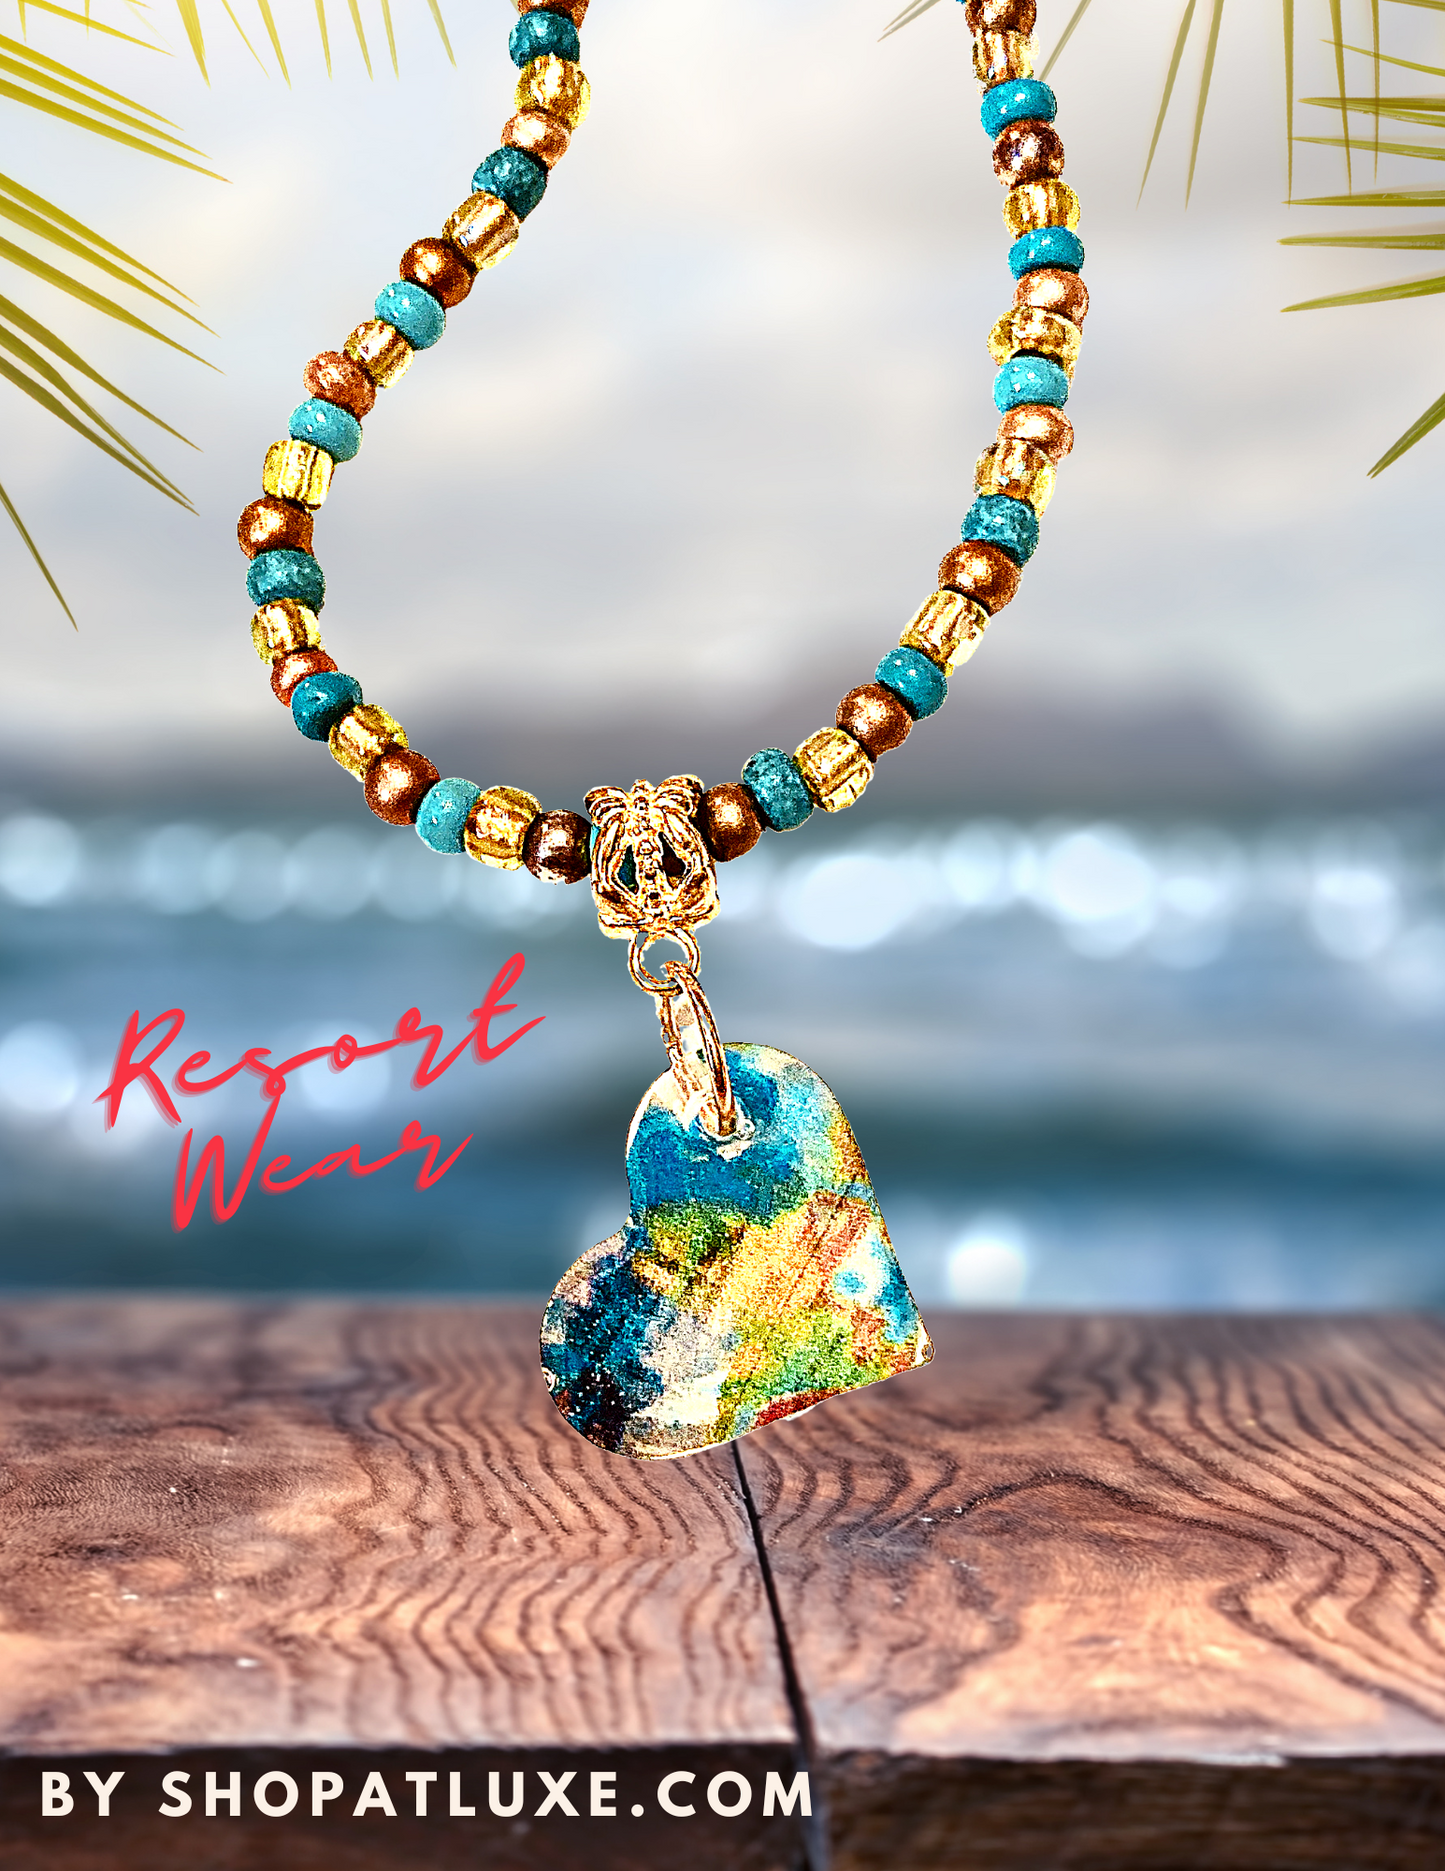 Amanda Koss Art Resort Wear Collection Heart Necklace